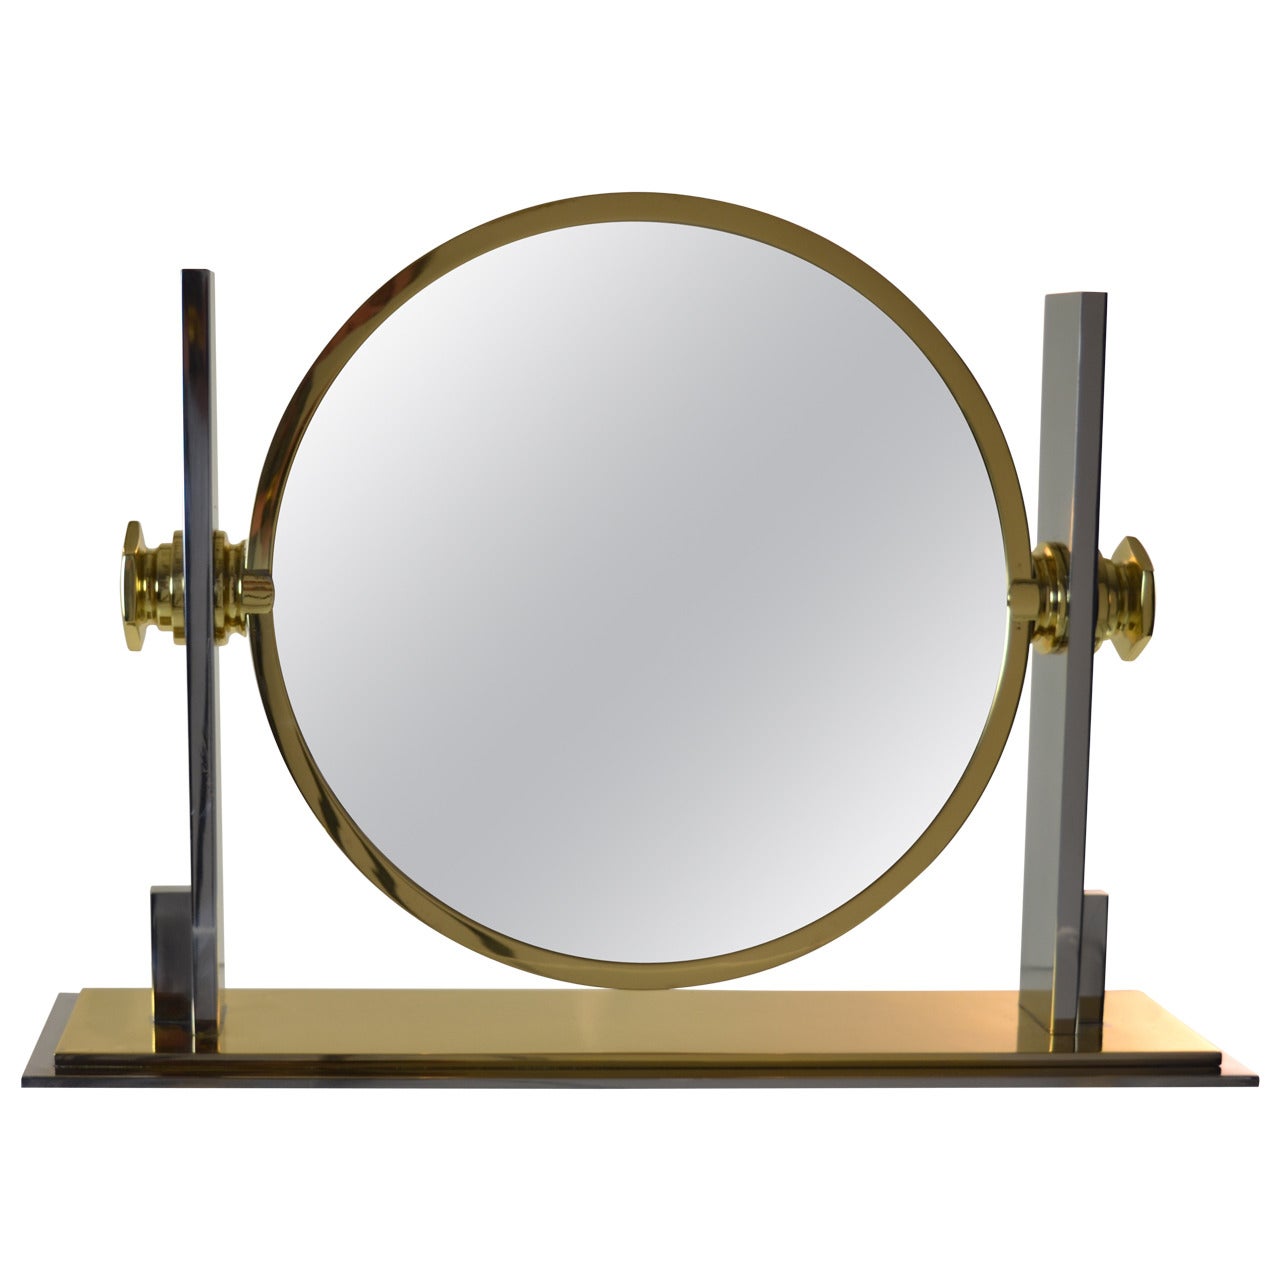 Karl Springer Large Vanity Mirror